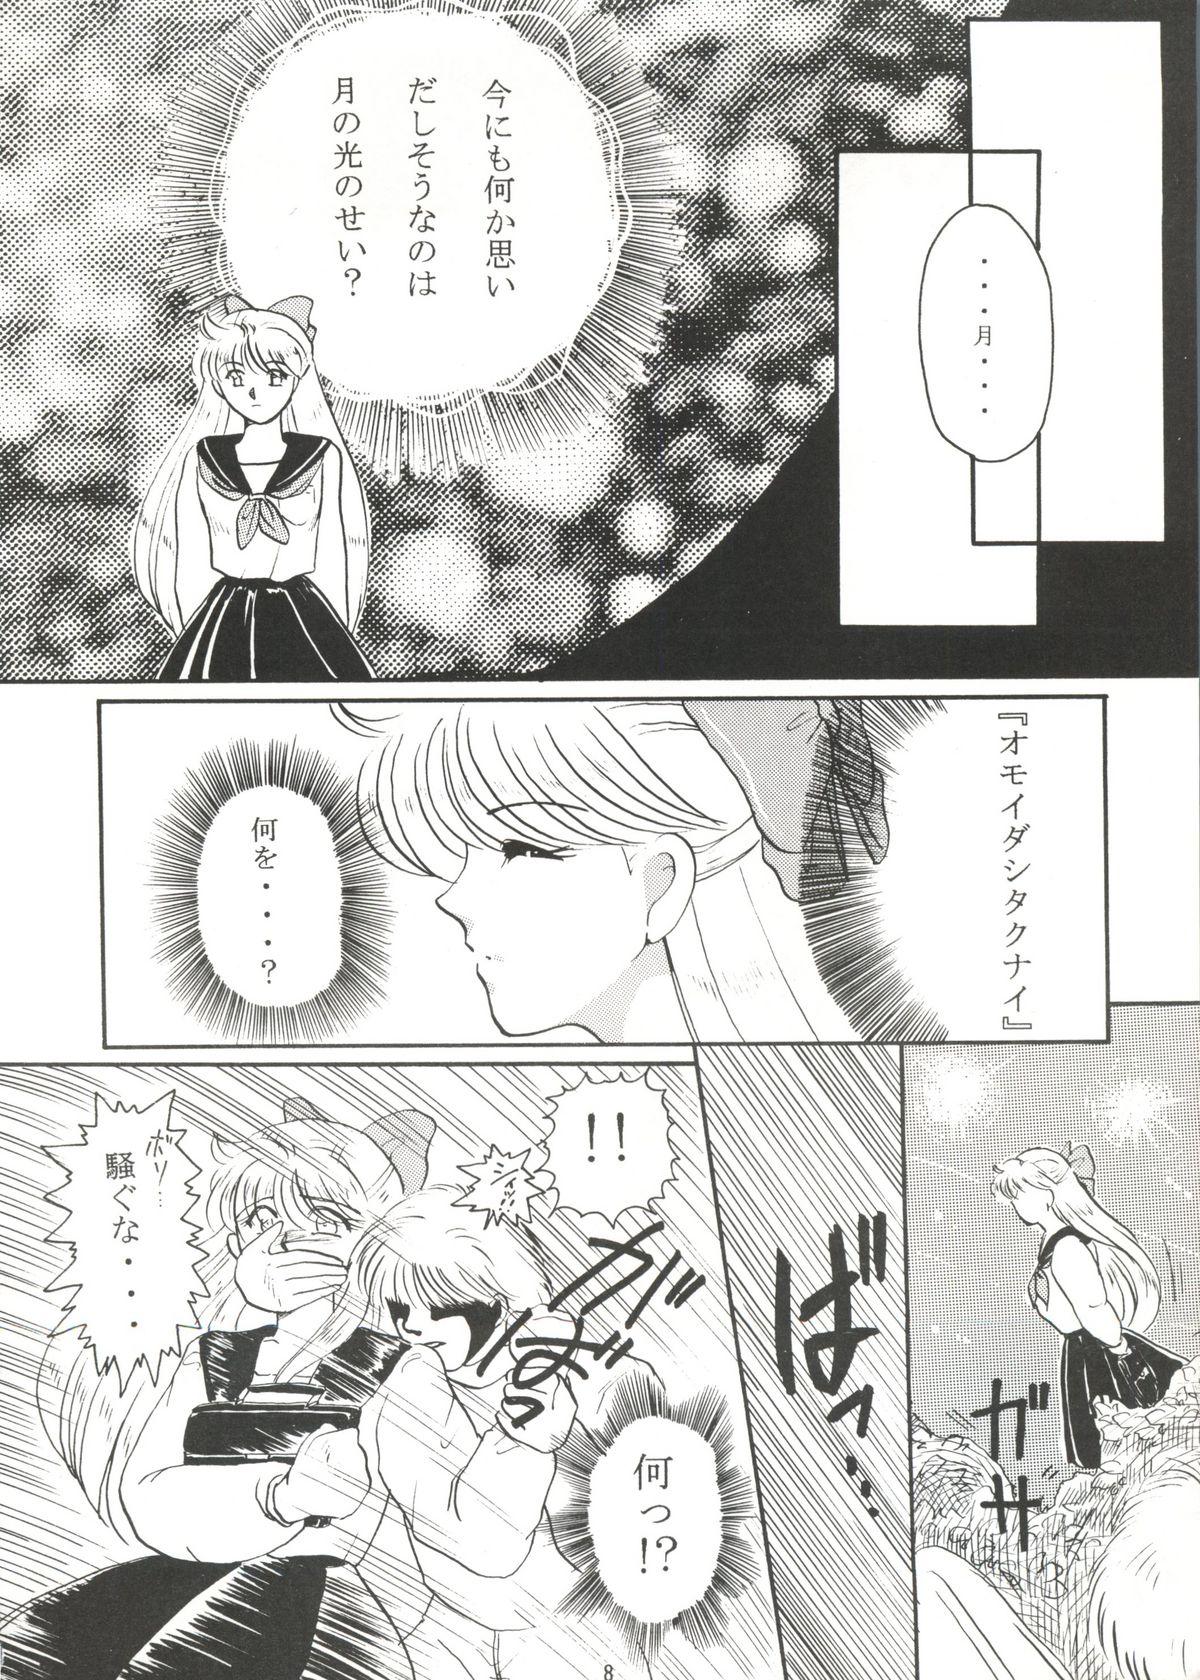 Interracial Grandia - Sailor moon Rubbing - Page 7